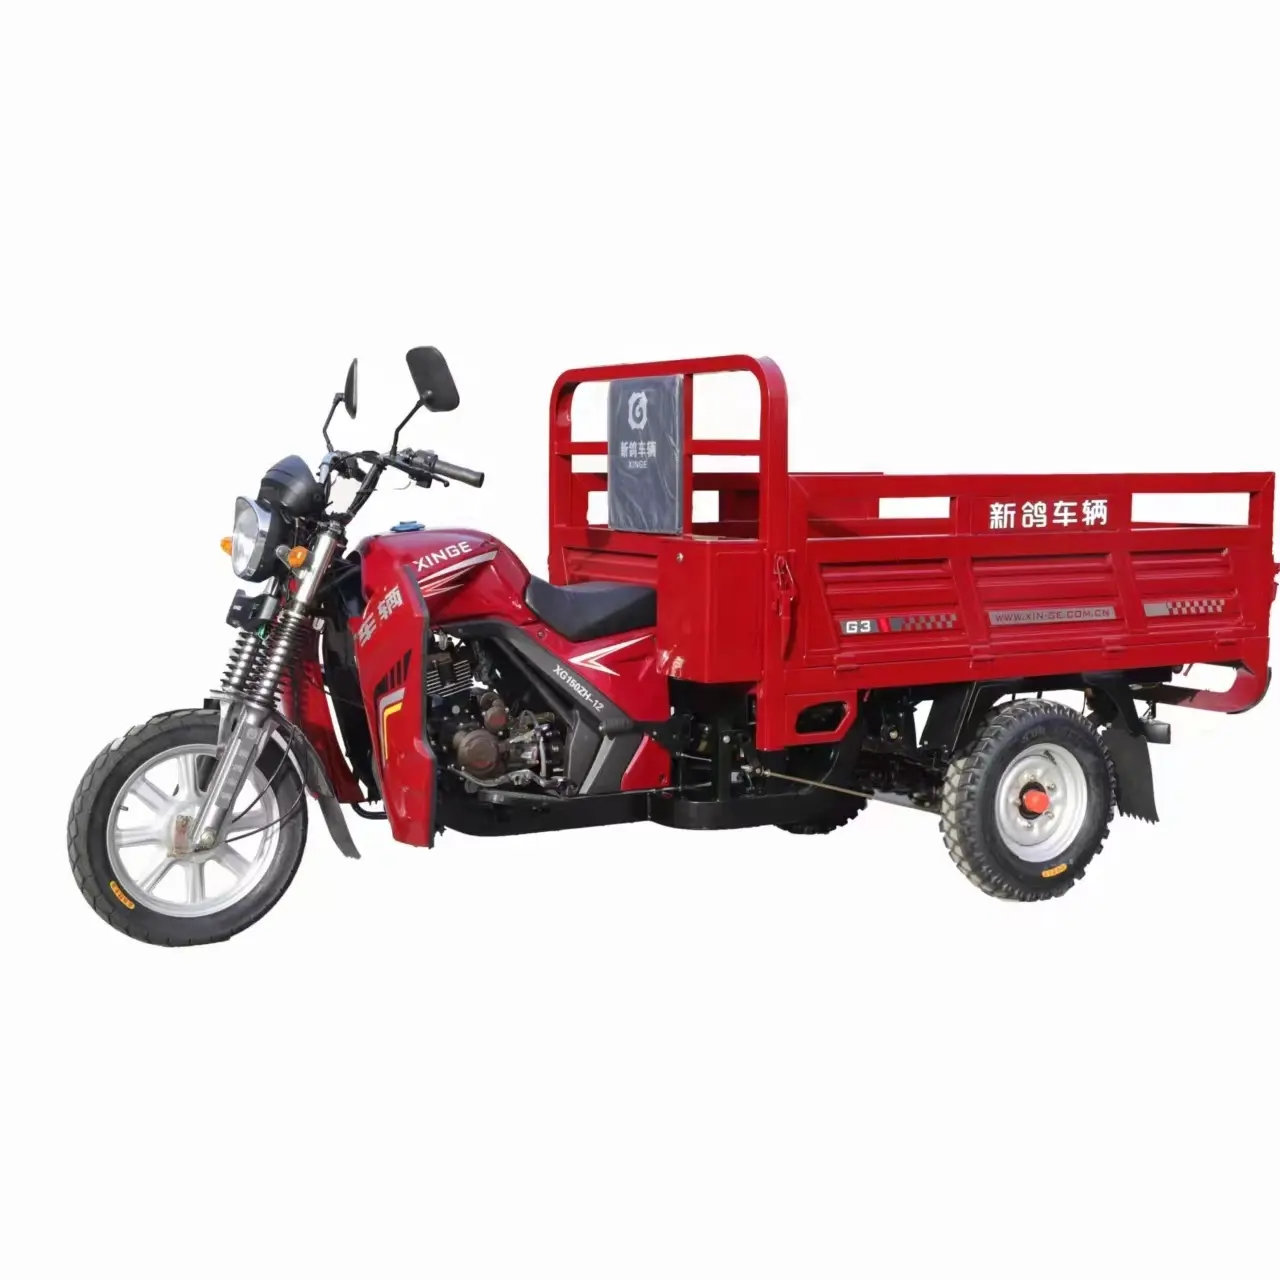 Güçlü hareketlilik Scooter yüksek kalite benzin kargo taşımacılığı üç tekerlekli motosiklet üç tekerlekli sıcak satış küresel